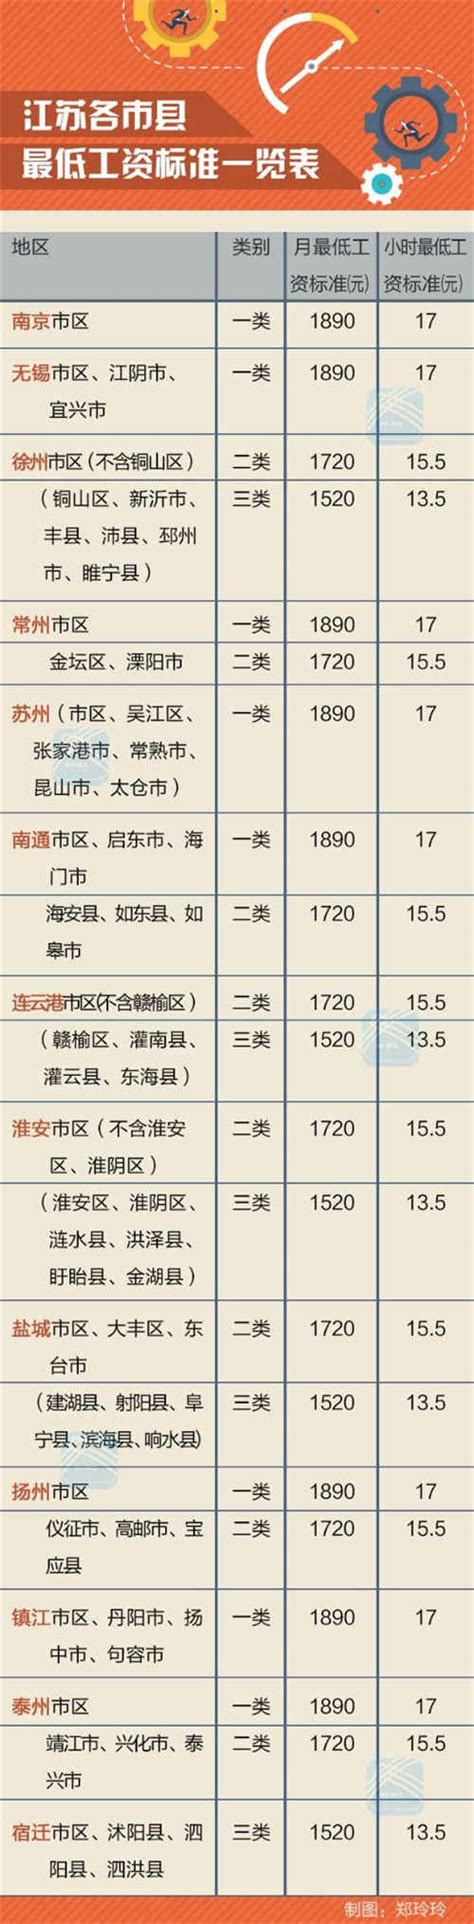 下月江苏将上调最低工资标准 重点影响这六类人收入_手机凤凰网